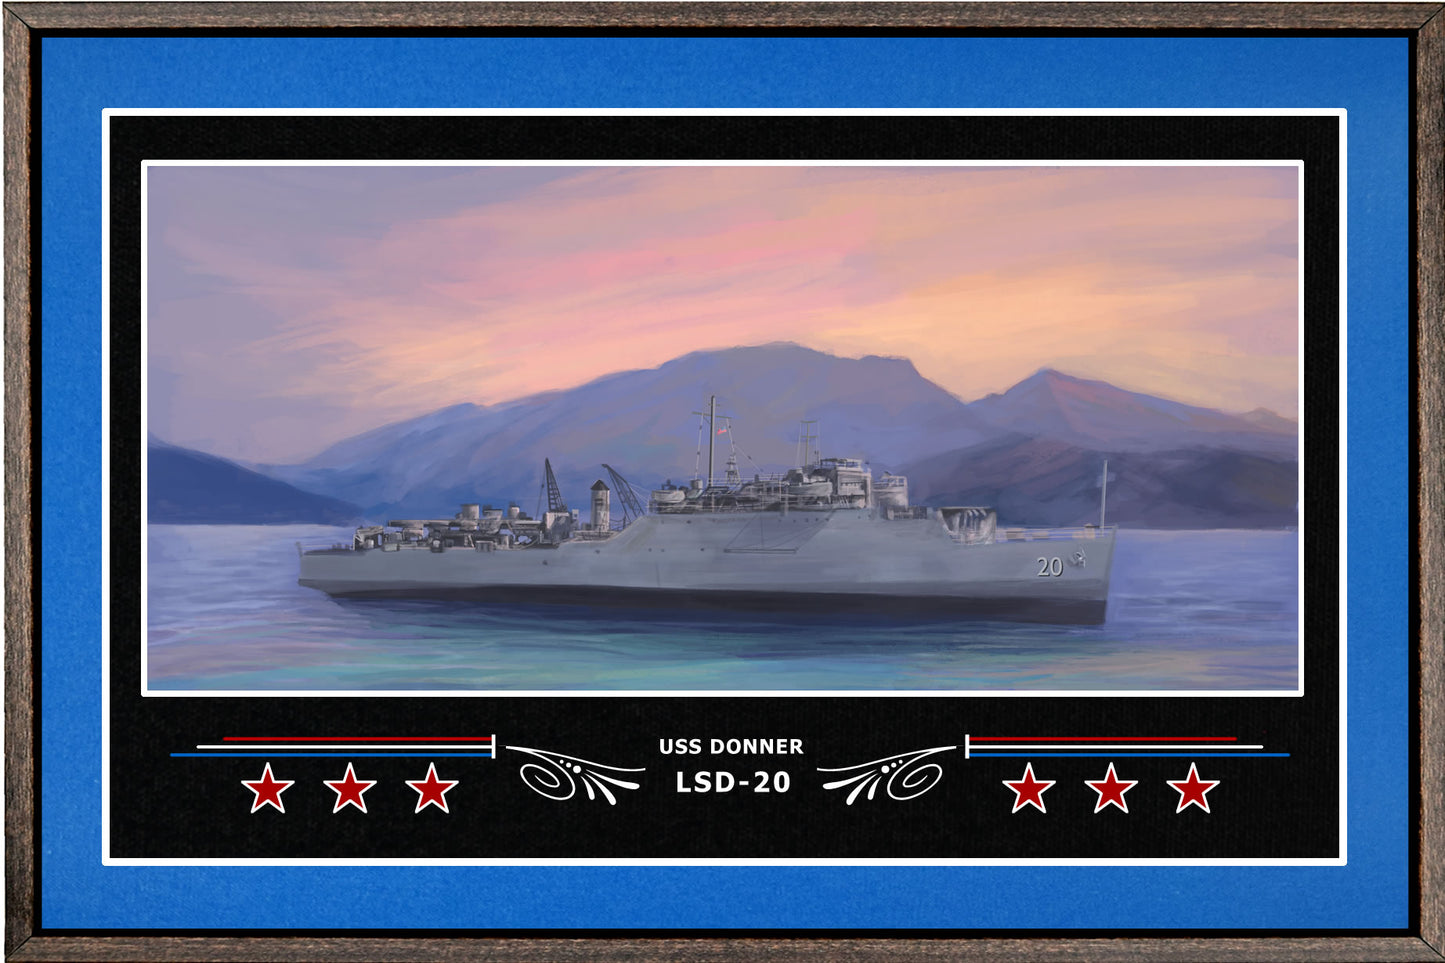 USS DONNER LSD 20 BOX FRAMED CANVAS ART BLUE